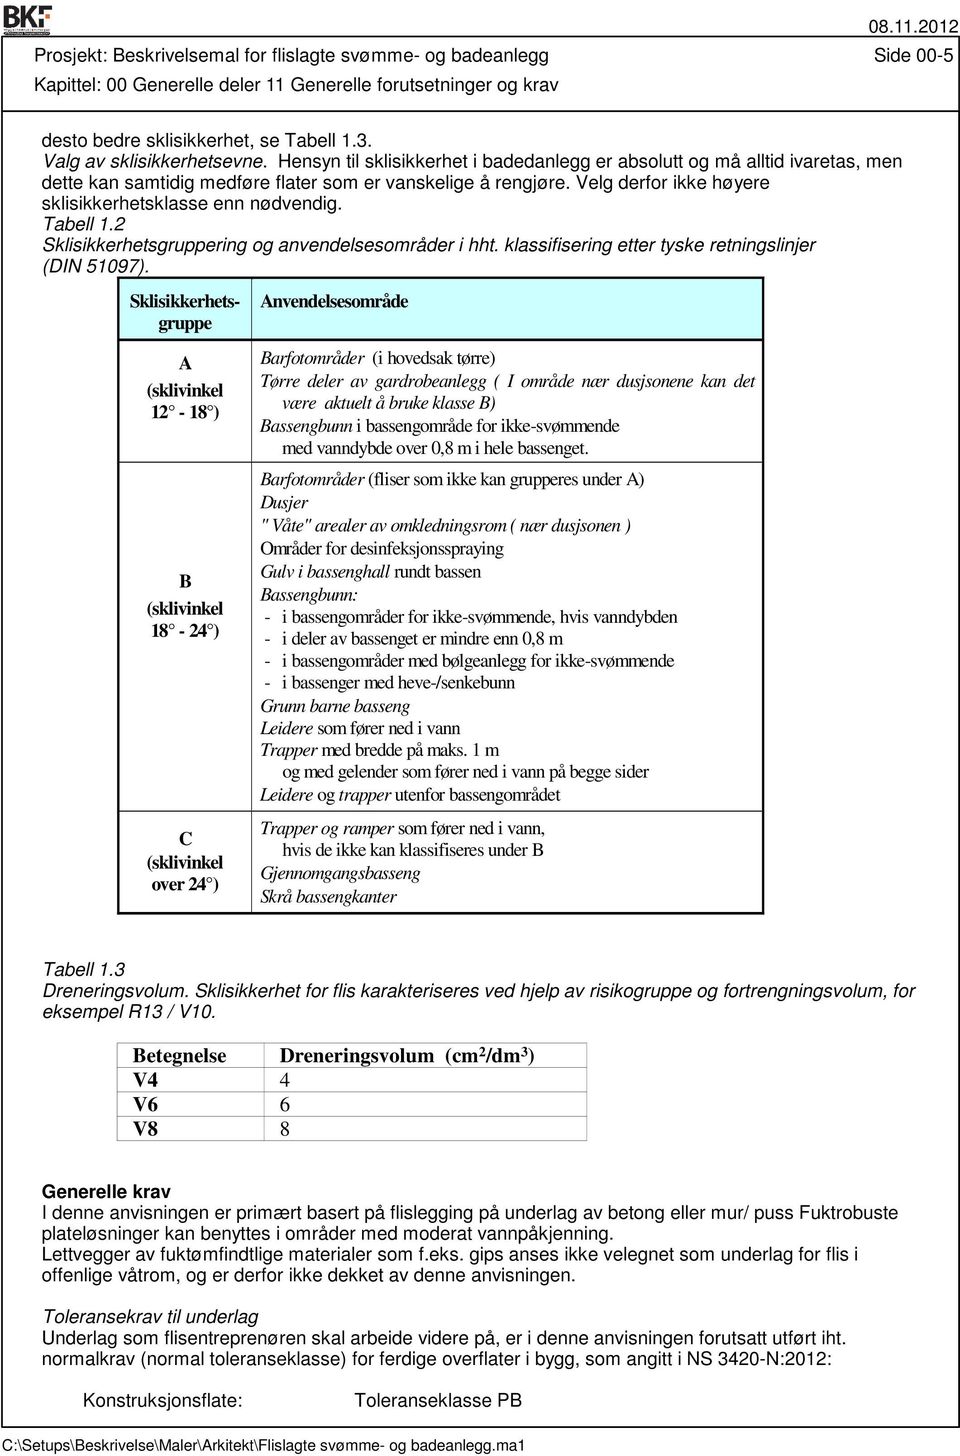 Velg derfor ikke høyere sklisikkerhetsklasse enn nødvendig. Tabell 1.2 Sklisikkerhetsgruppering og anvendelsesområder i hht. klassifisering etter tyske retningslinjer (DIN 51097).